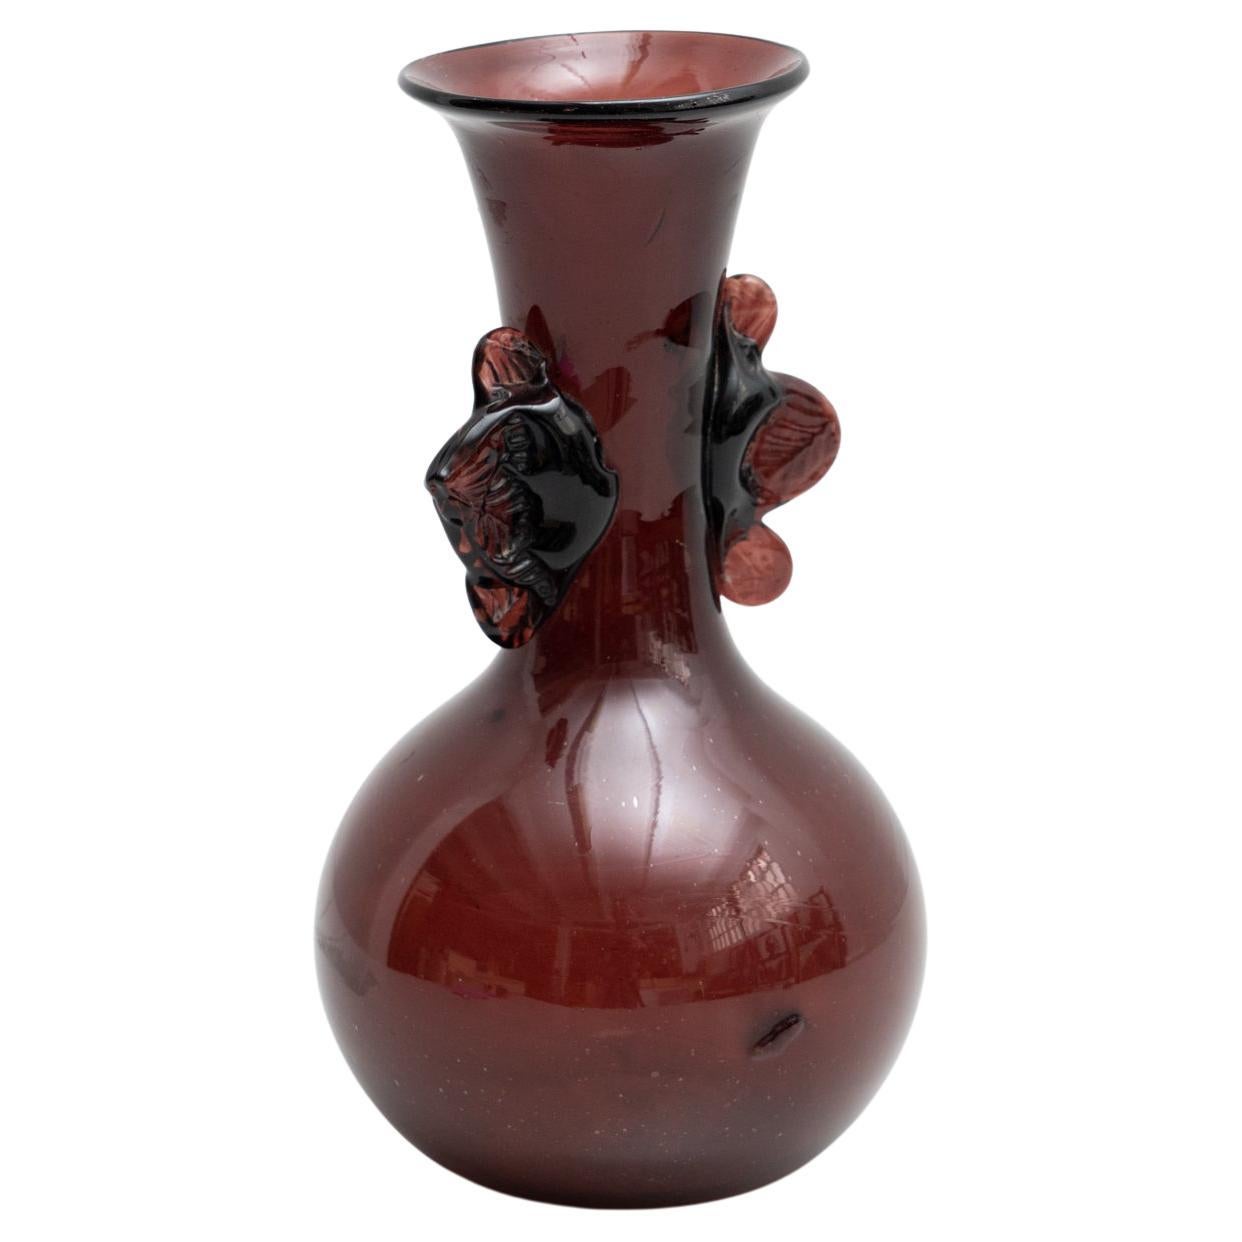 Vase en verre de Murano datant d'environ 1970 : artisanat italien classique et élégance intemporelle